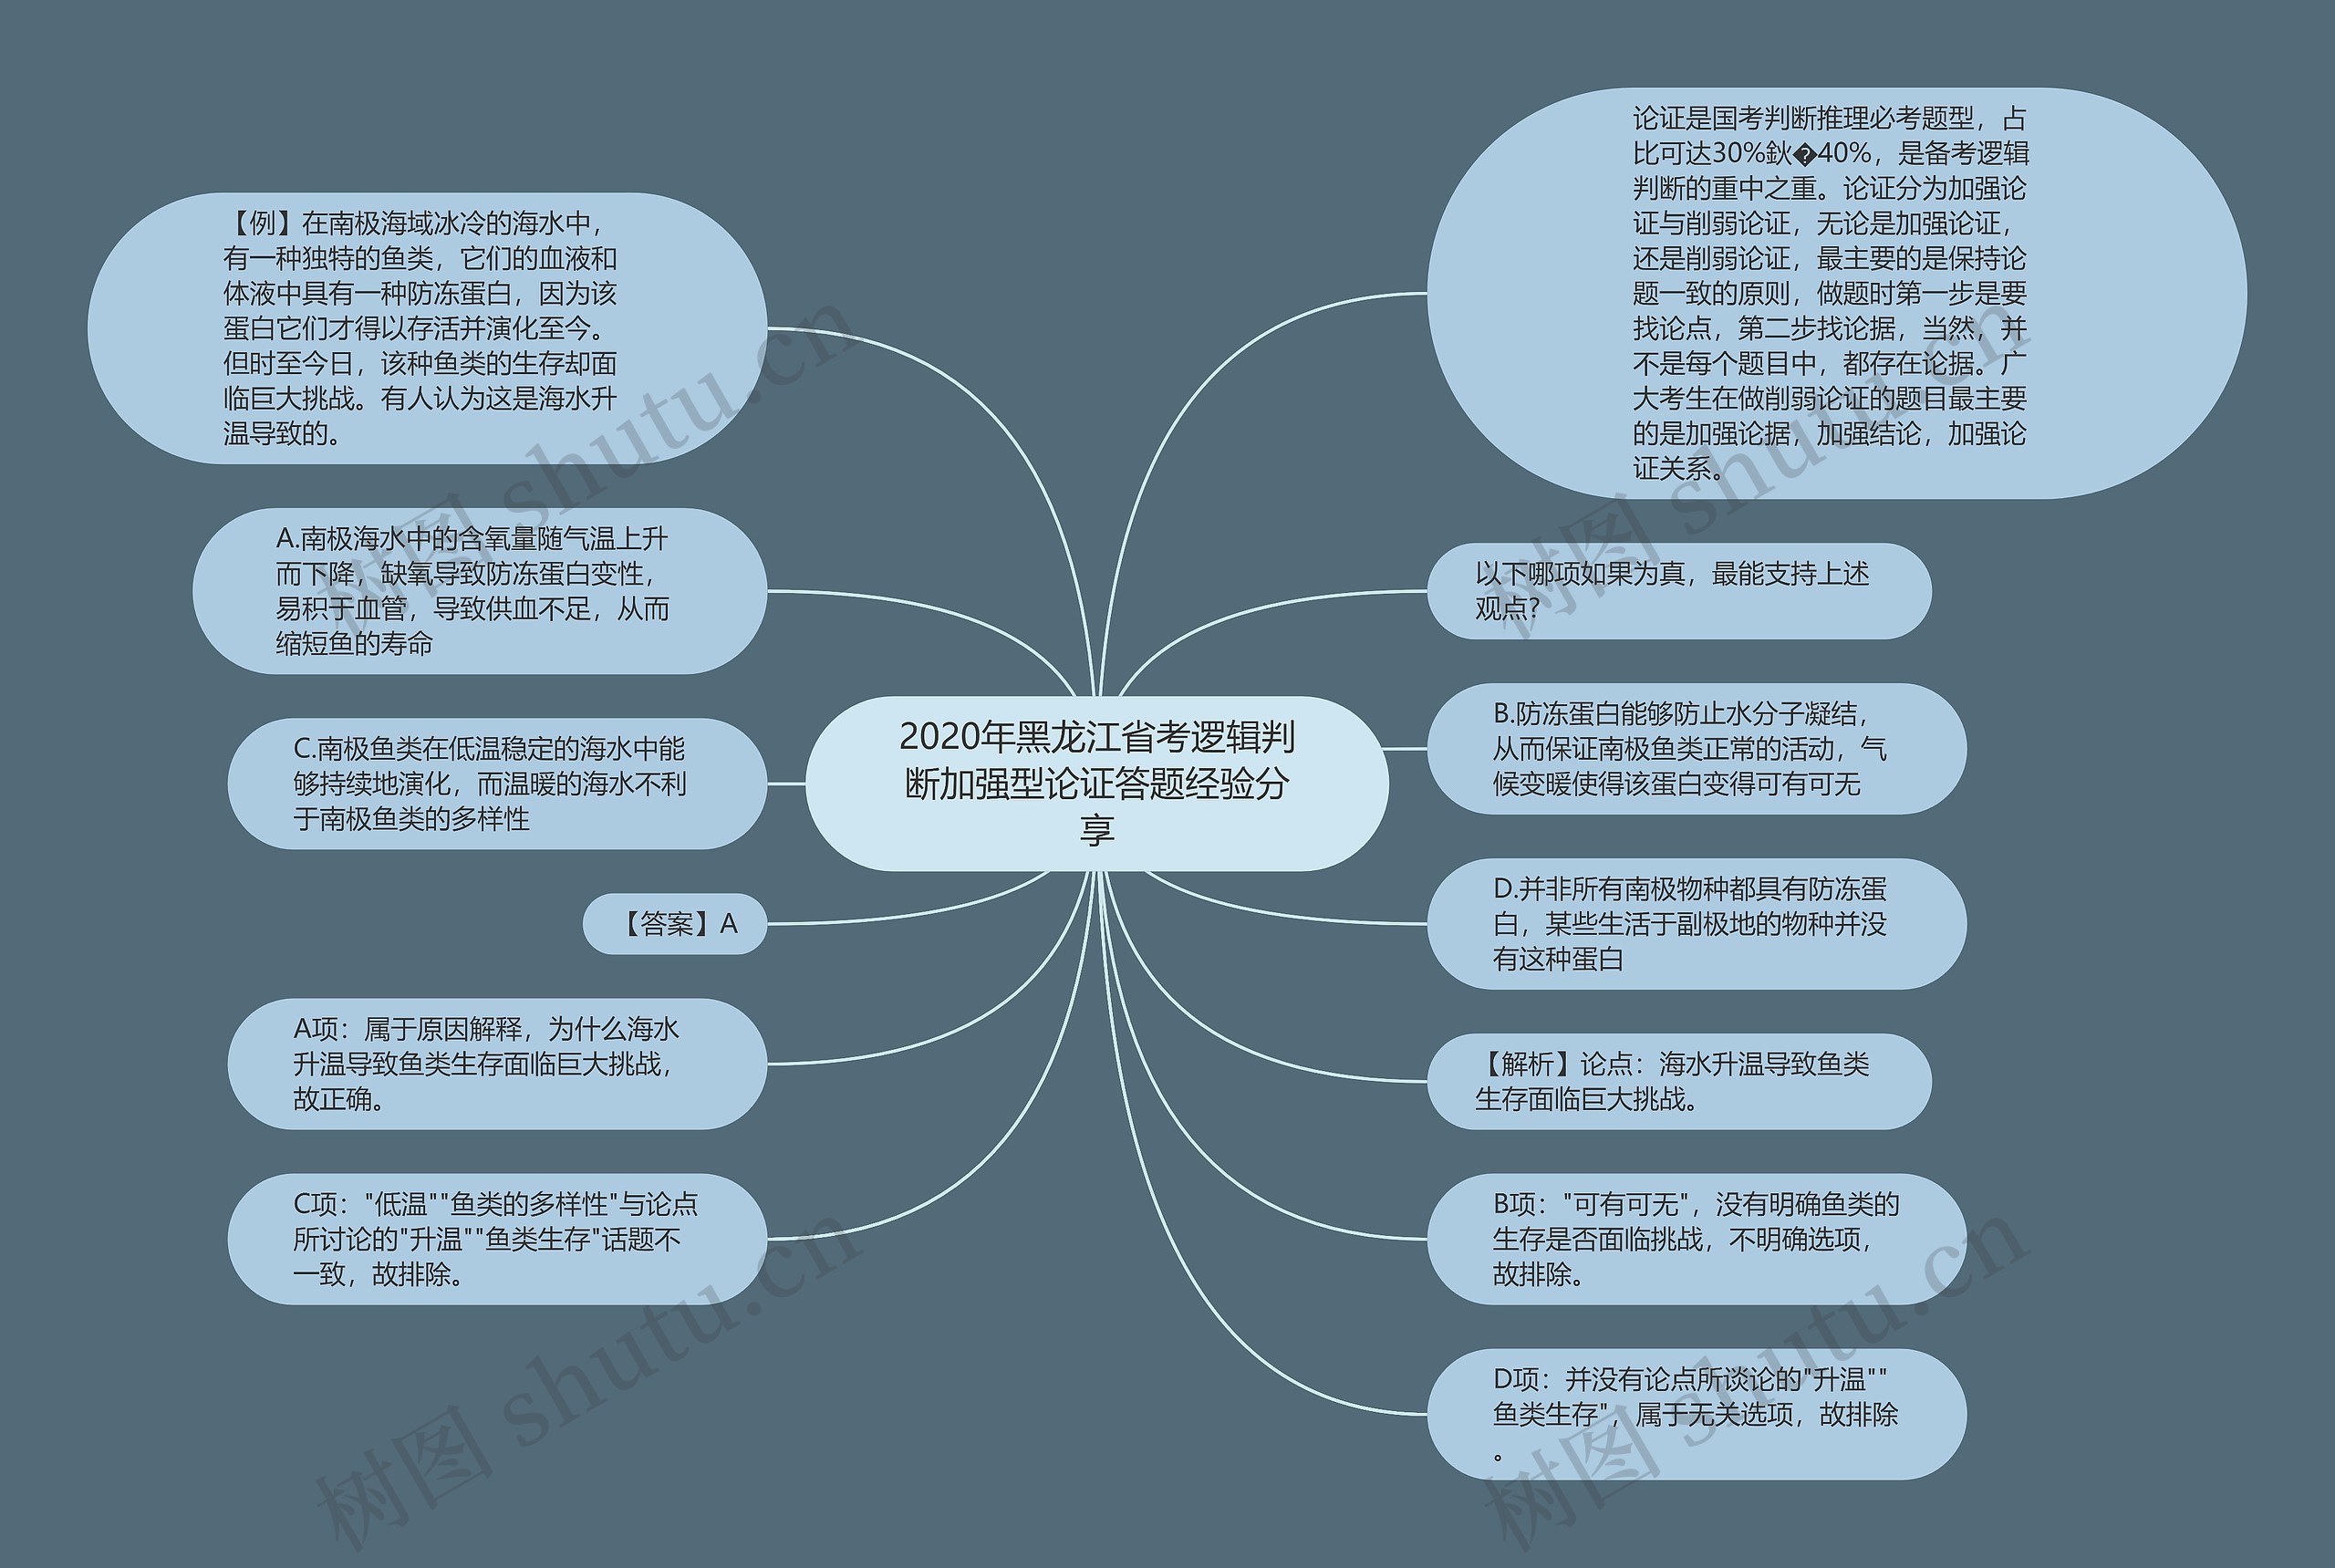 2020年黑龙江省考逻辑判断加强型论证答题经验分享思维导图